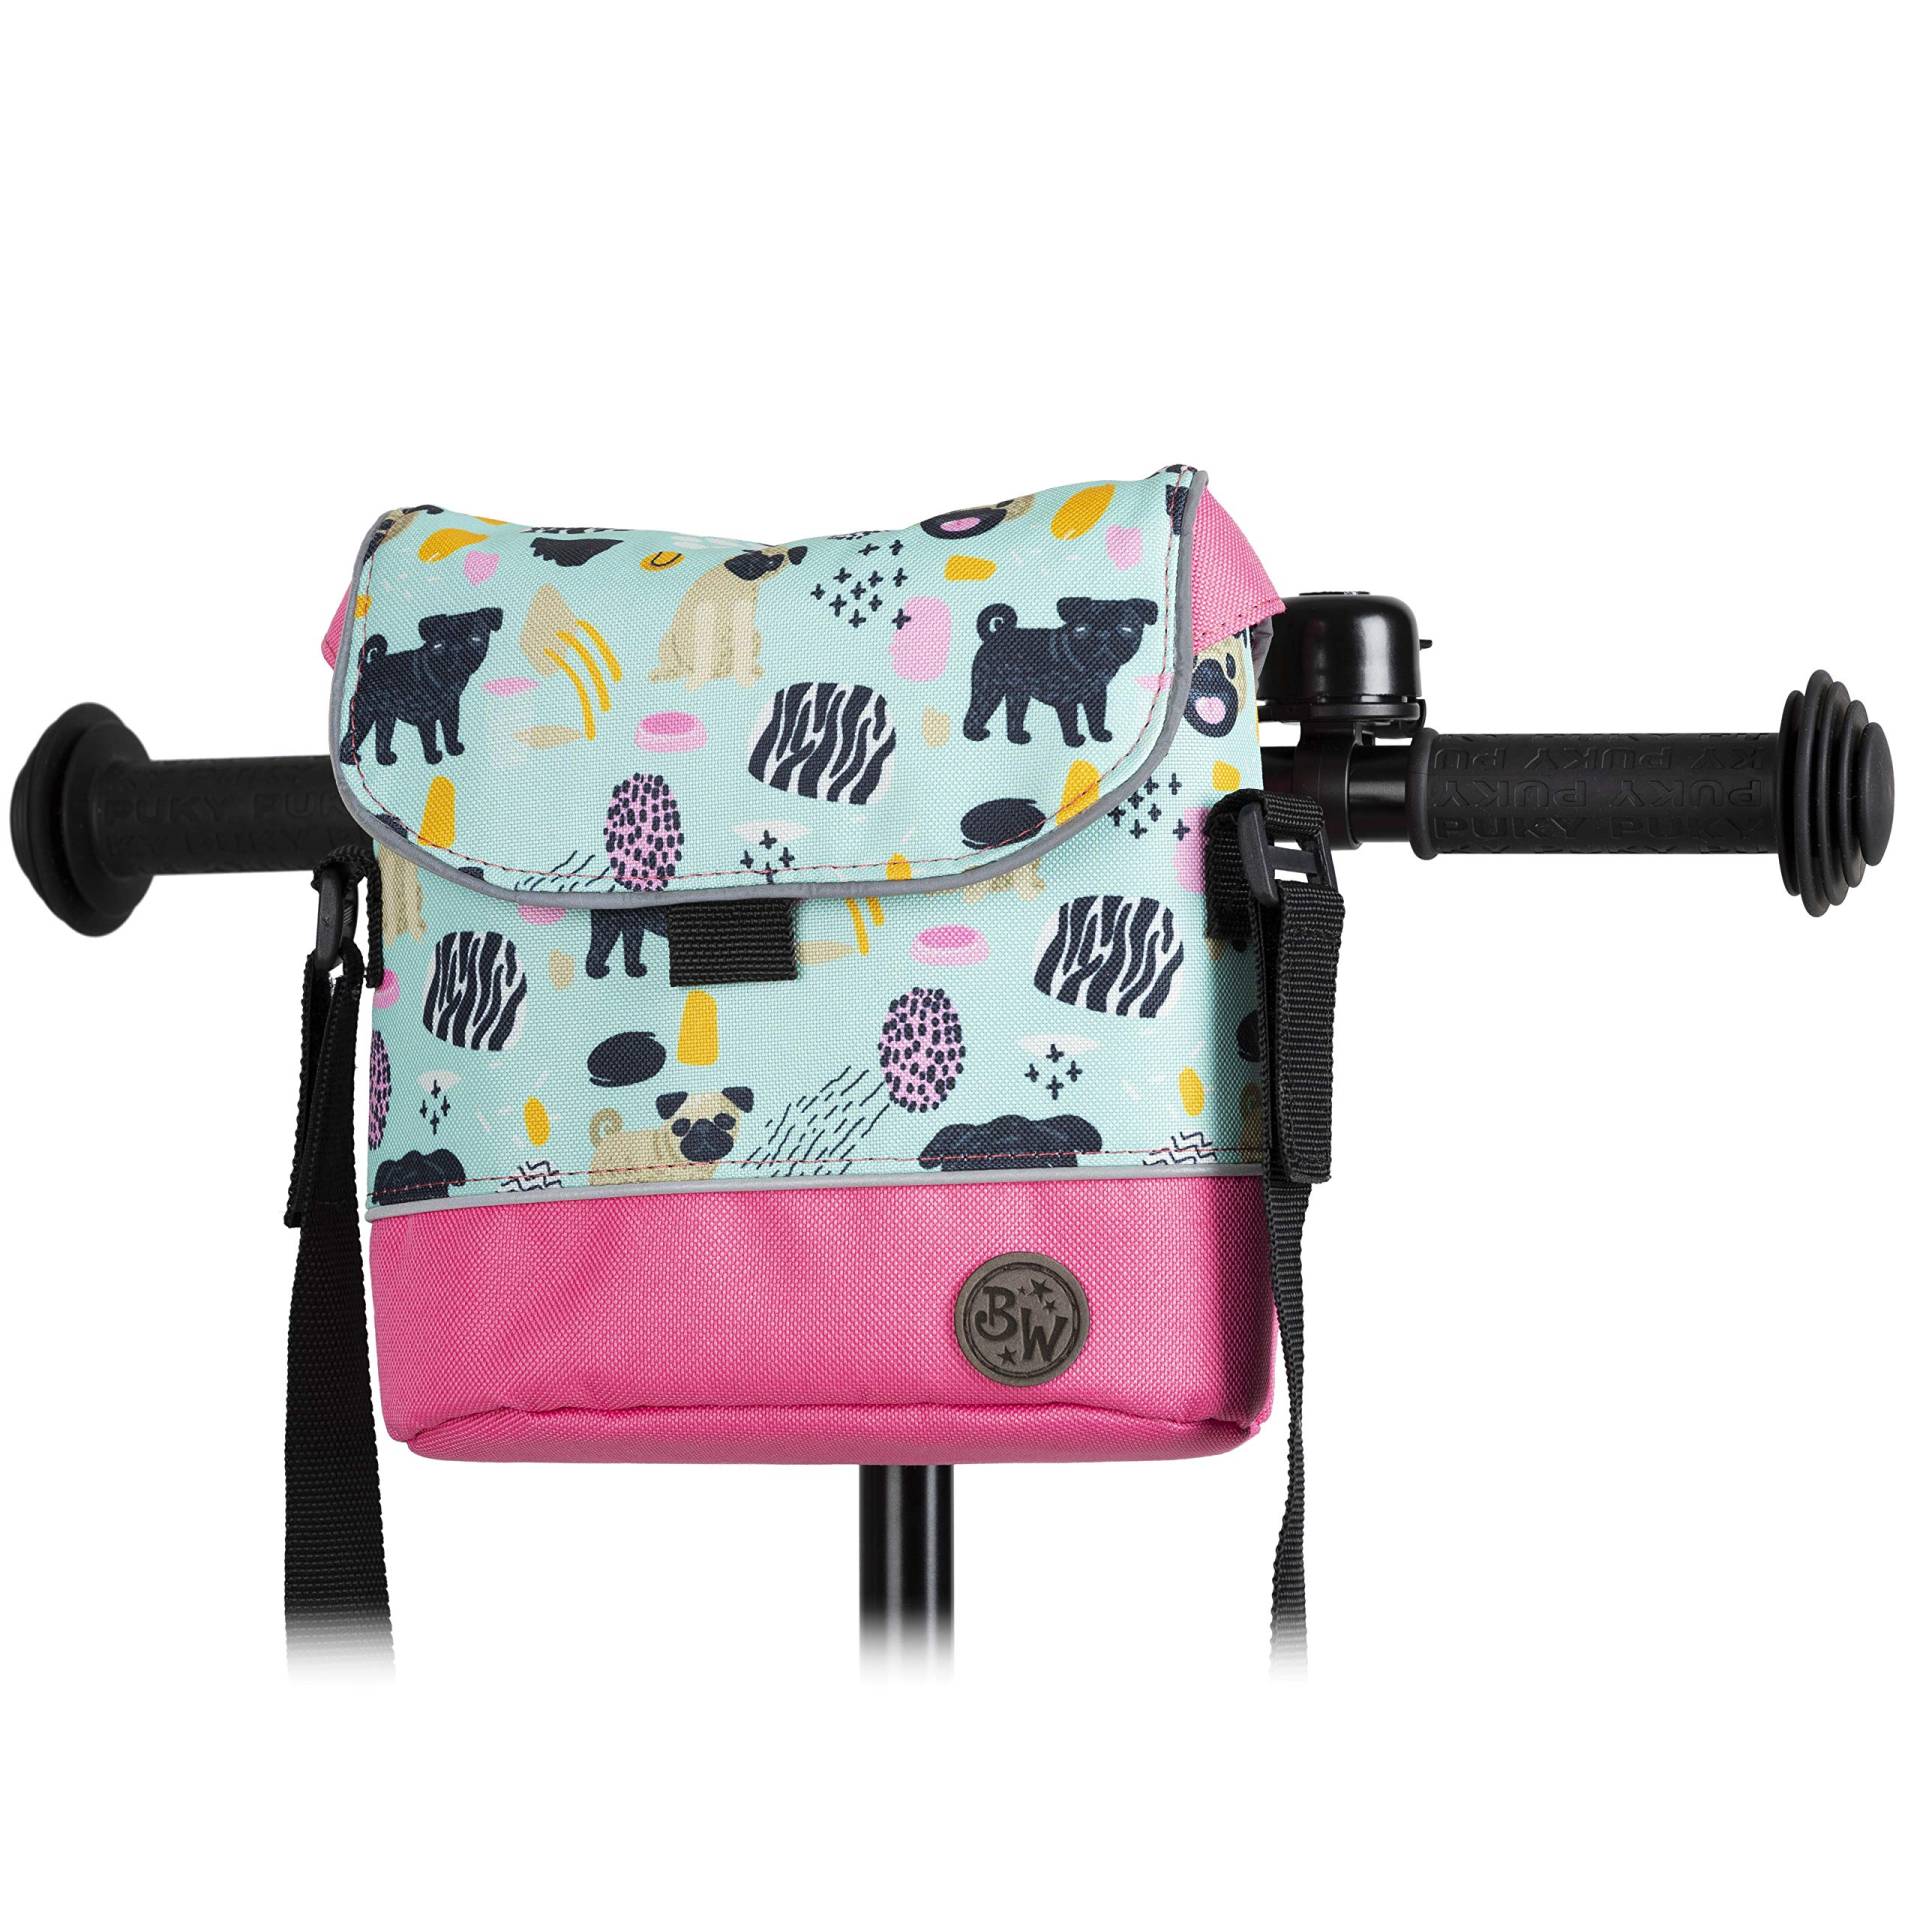 BAMBINIWELT Lenkertasche Tasche kompatibel mit Puky mit Woom Laufrad Räder Roller Fahrrad Fahrradtasche für Kinder wasserabweisend mit Schultergurt (Modell 19) von BambiniWelt by Rafael K.